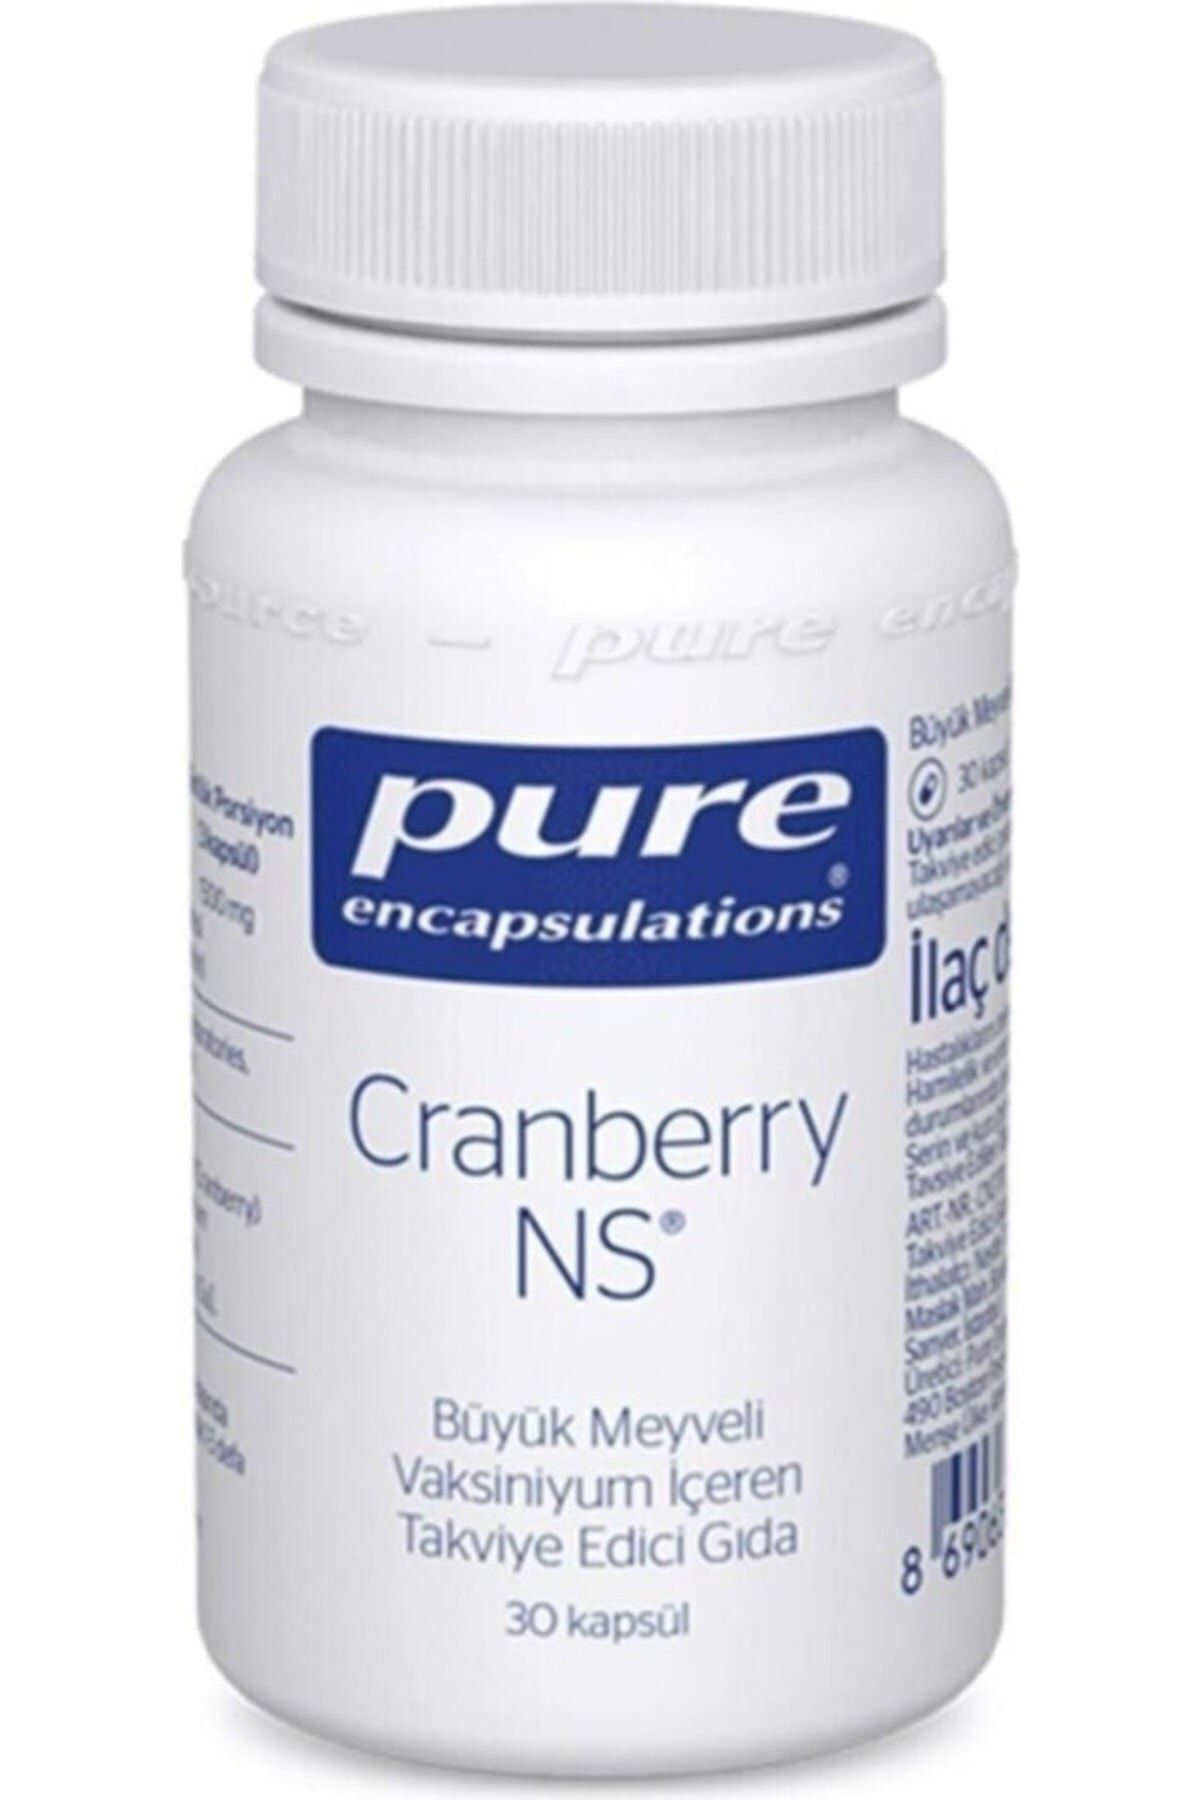 Pure Encapsulations Pure Encapsulation Cranberry Ns 30 Kapsül